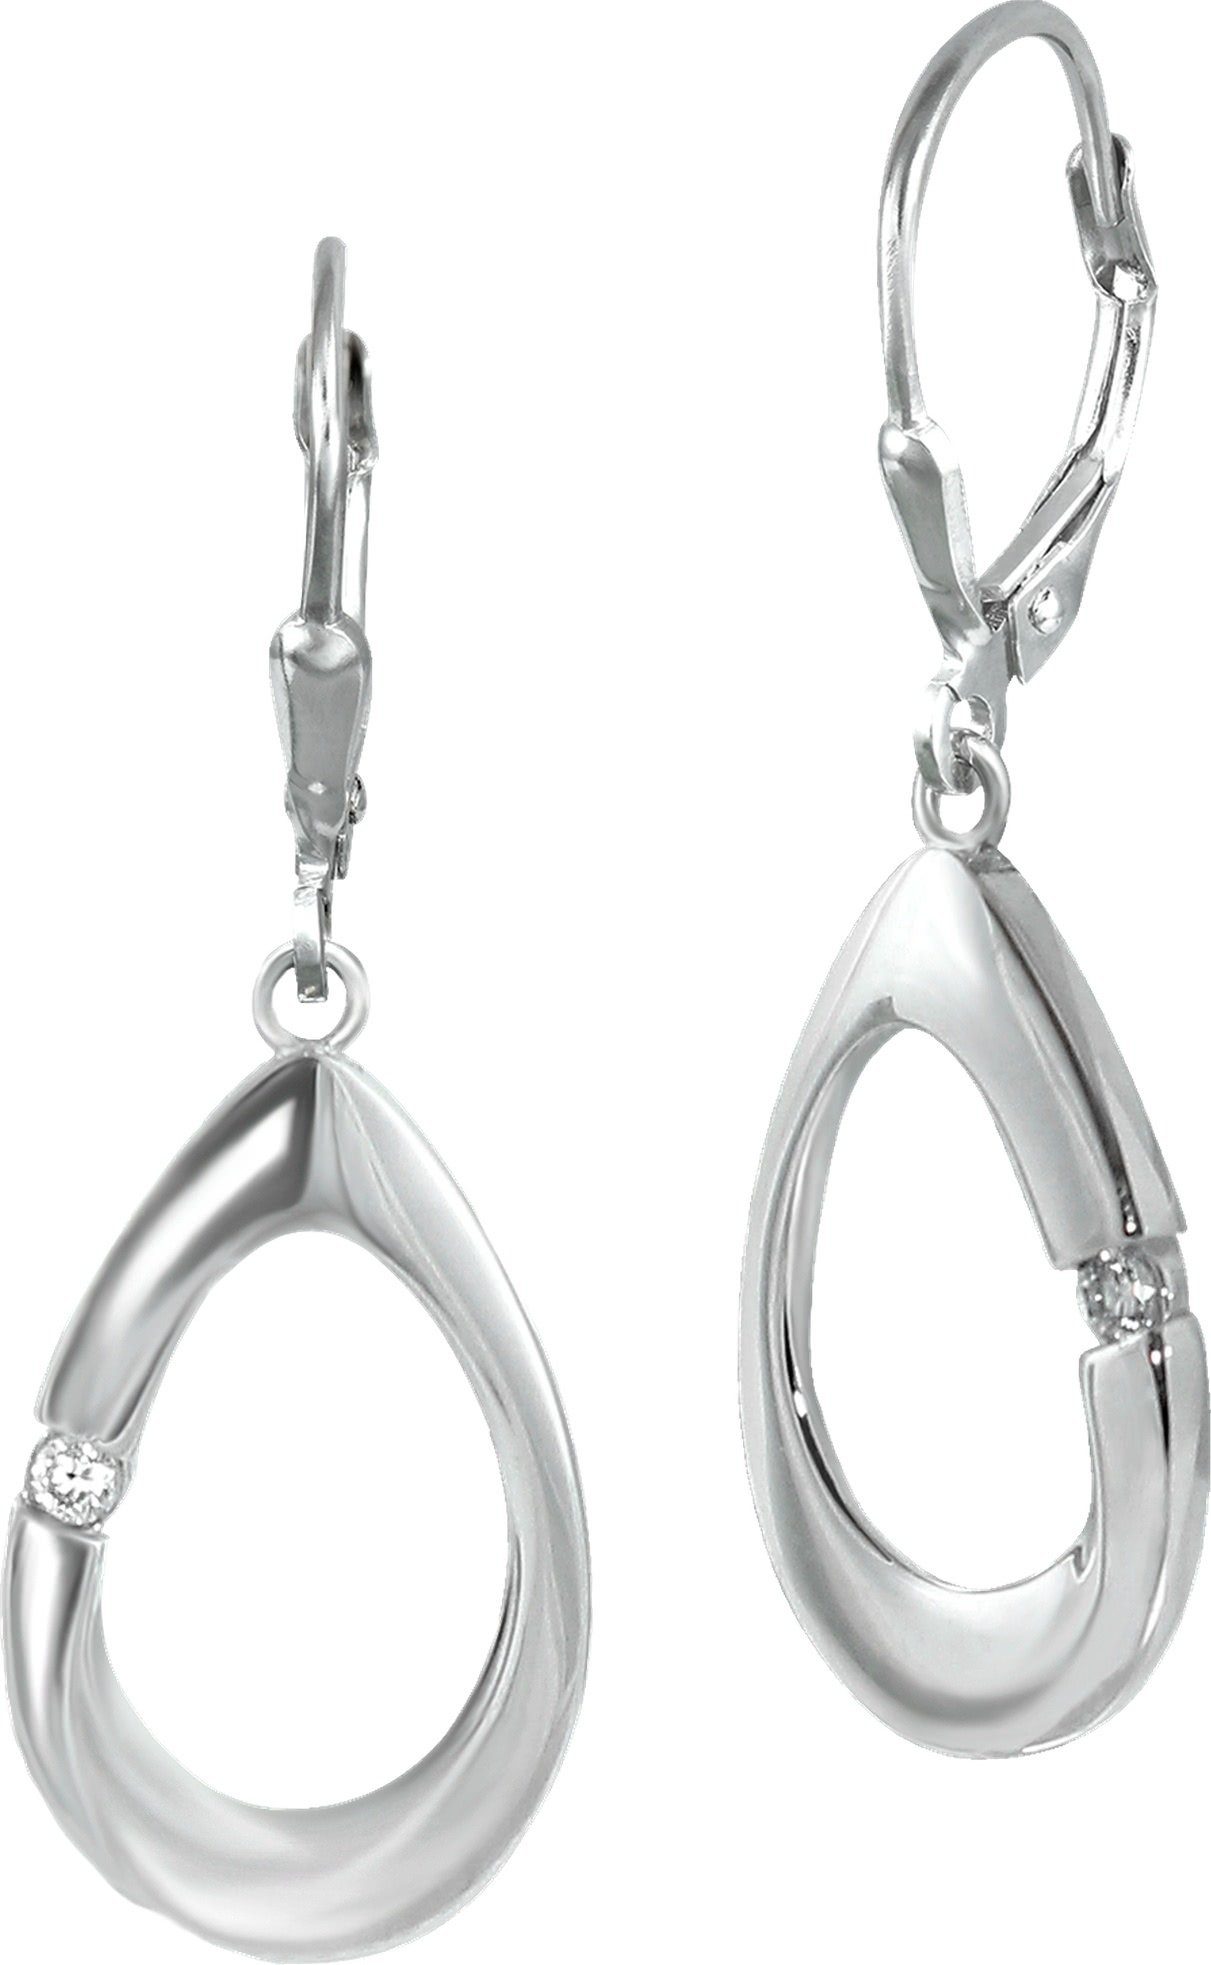 SilberDream Paar Ohrhänger SilberDream Damen Ohrhänger Ohrring Oval (Ohrhänger), Damen Ohrhänger Oval aus 925 Sterling Silber, glanz, Farbe: silber, we